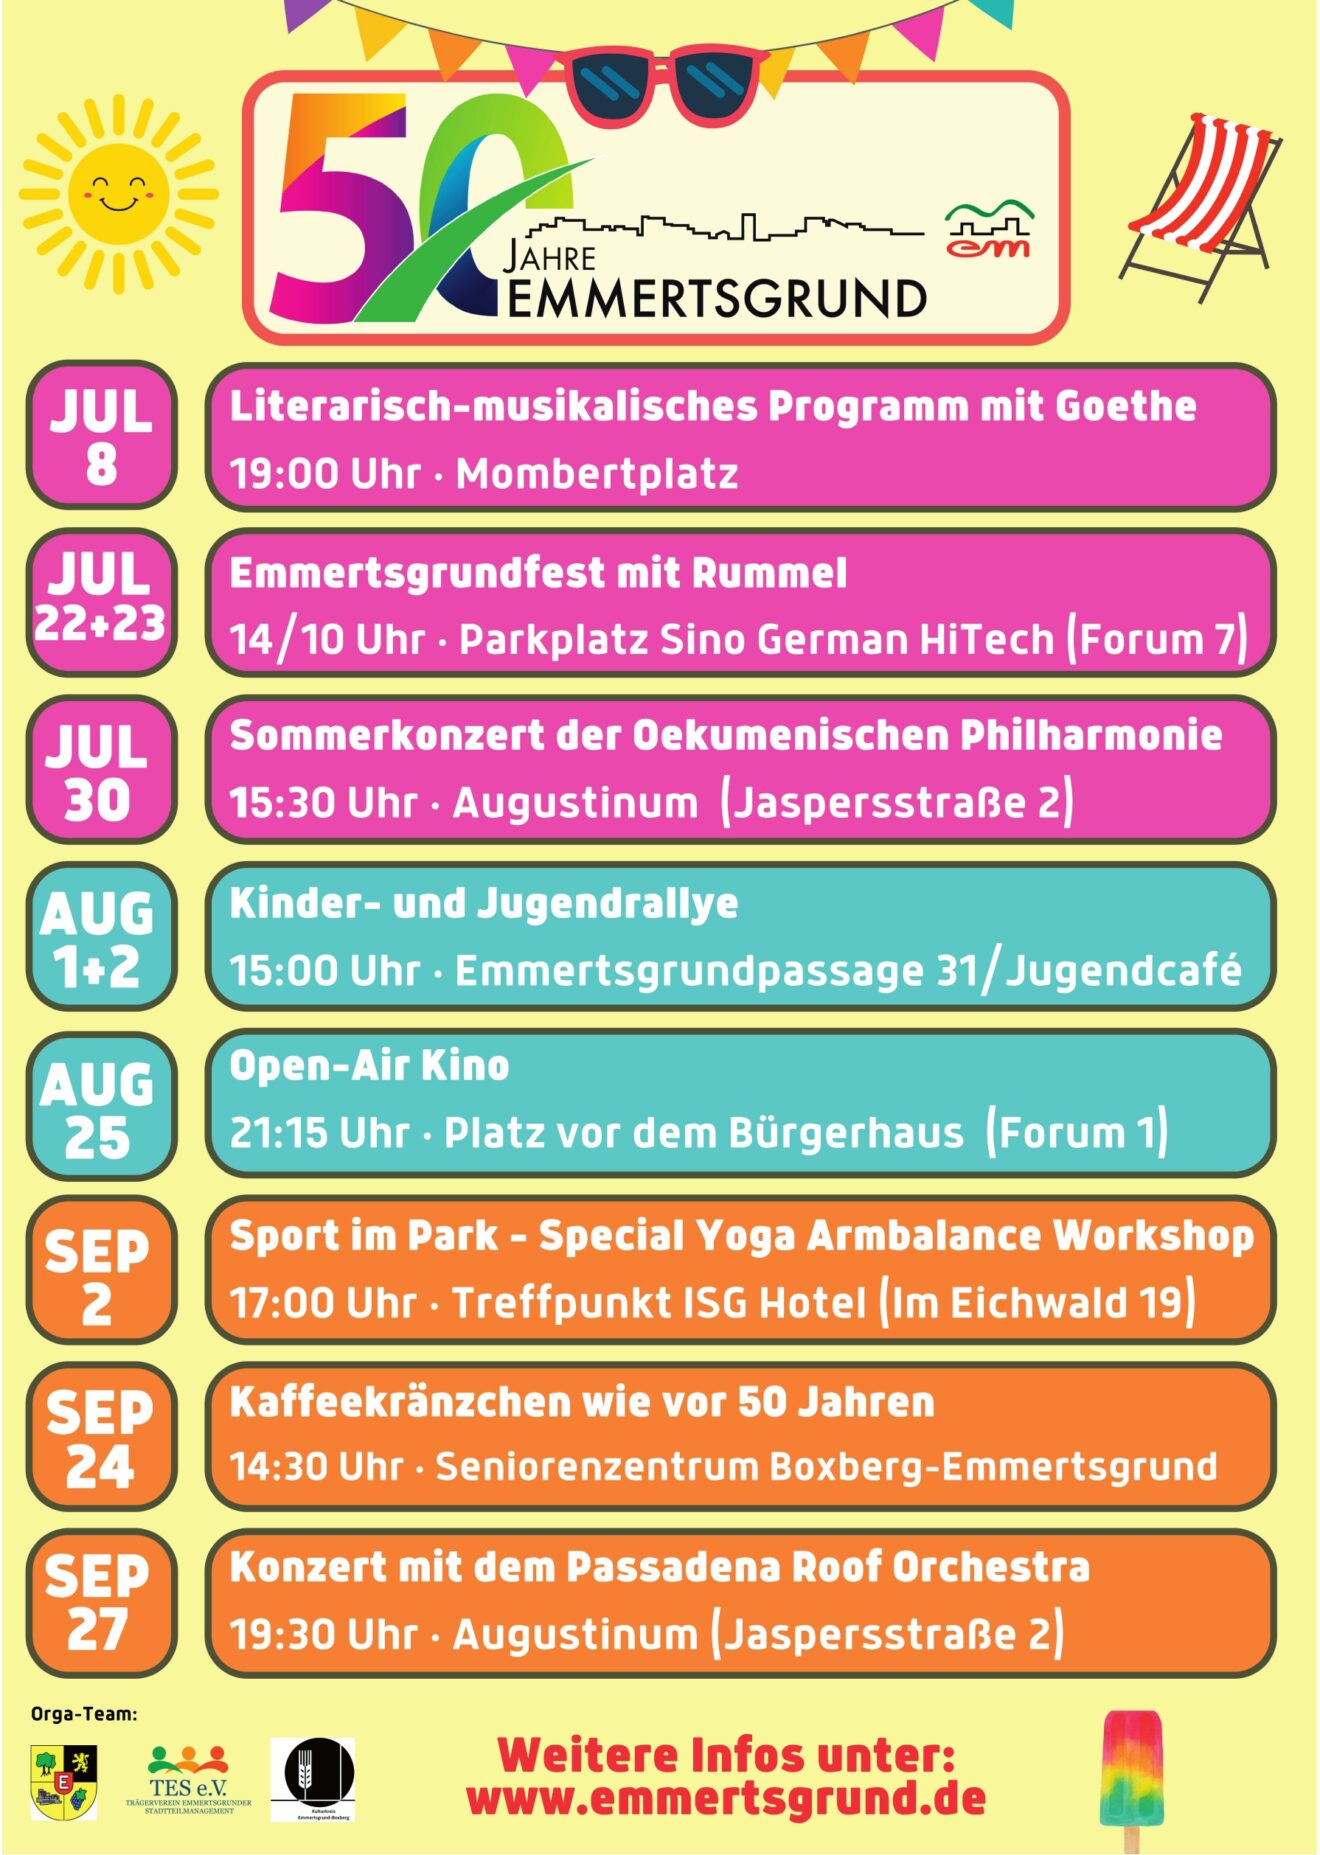 Goethe am Mombertplatz, Emmertsgrundfest  und philharmonische Klänge im Augustinum – der Juli hat einiges zu bieten